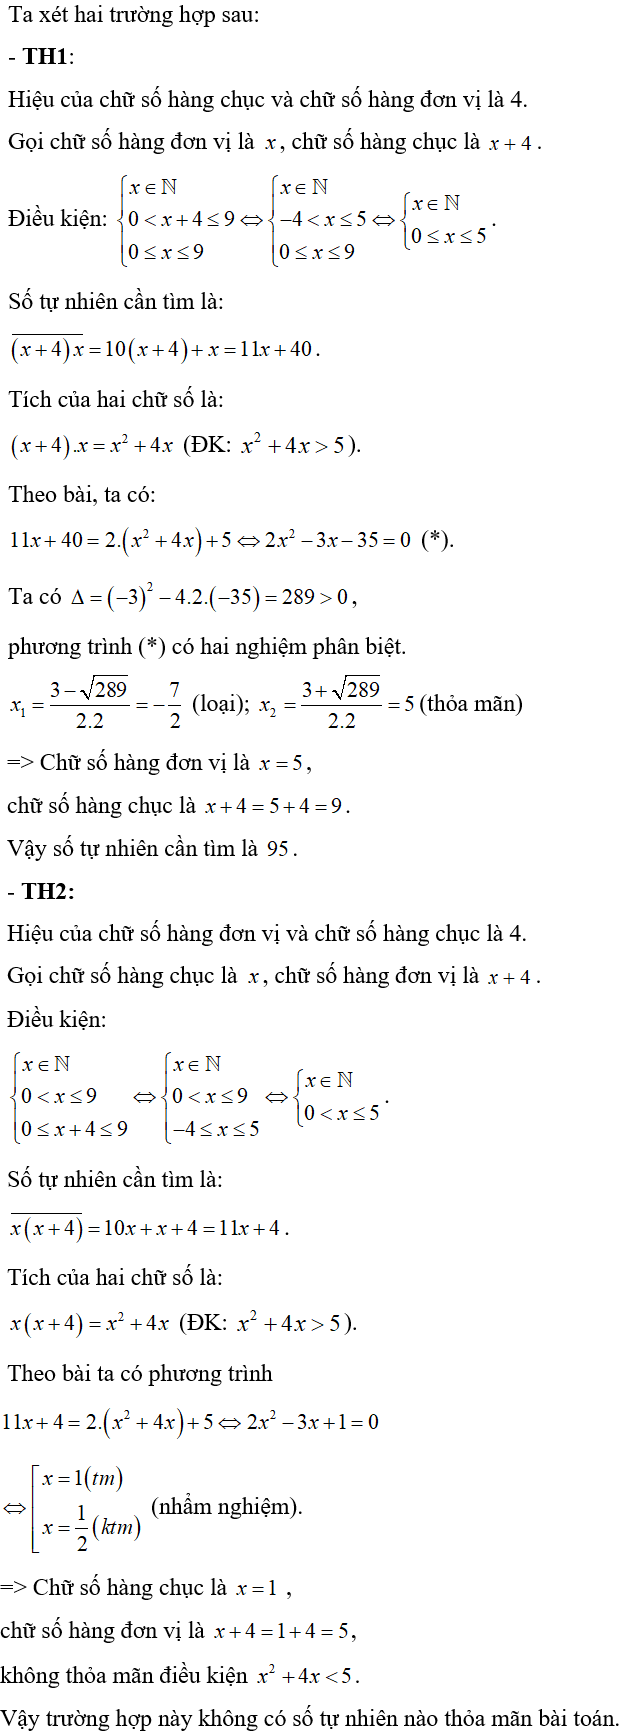 Cách giải bài toán về cấu tạo số bằng cách lập phương trình cực hay, có đáp án